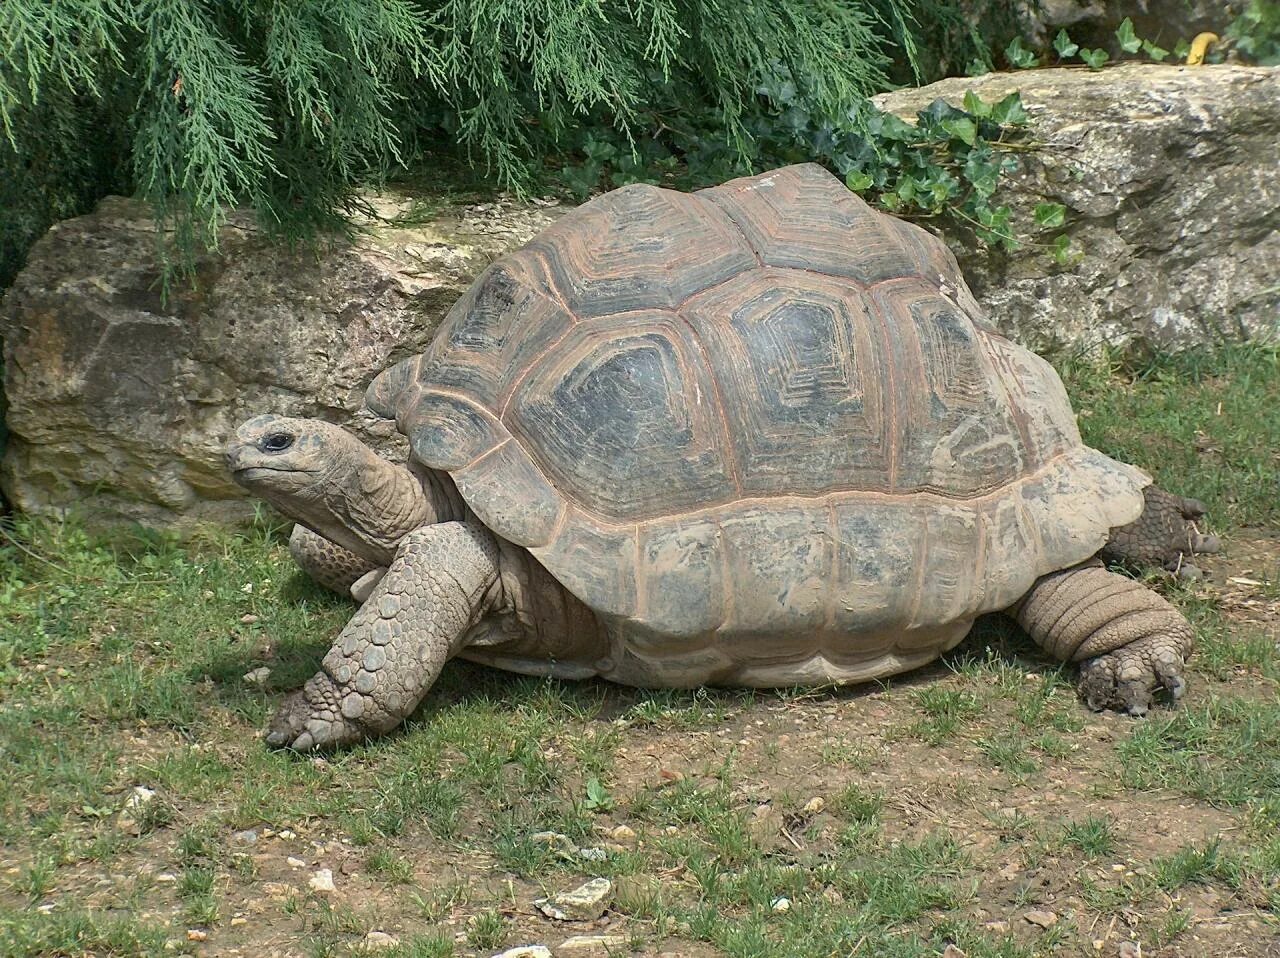 Галапагосская черепаха. Абингдонская слоновая черепаха. Галапагосская гигантская черепаха. Гигантская черепаха Альдабра. Черепахи живут 300